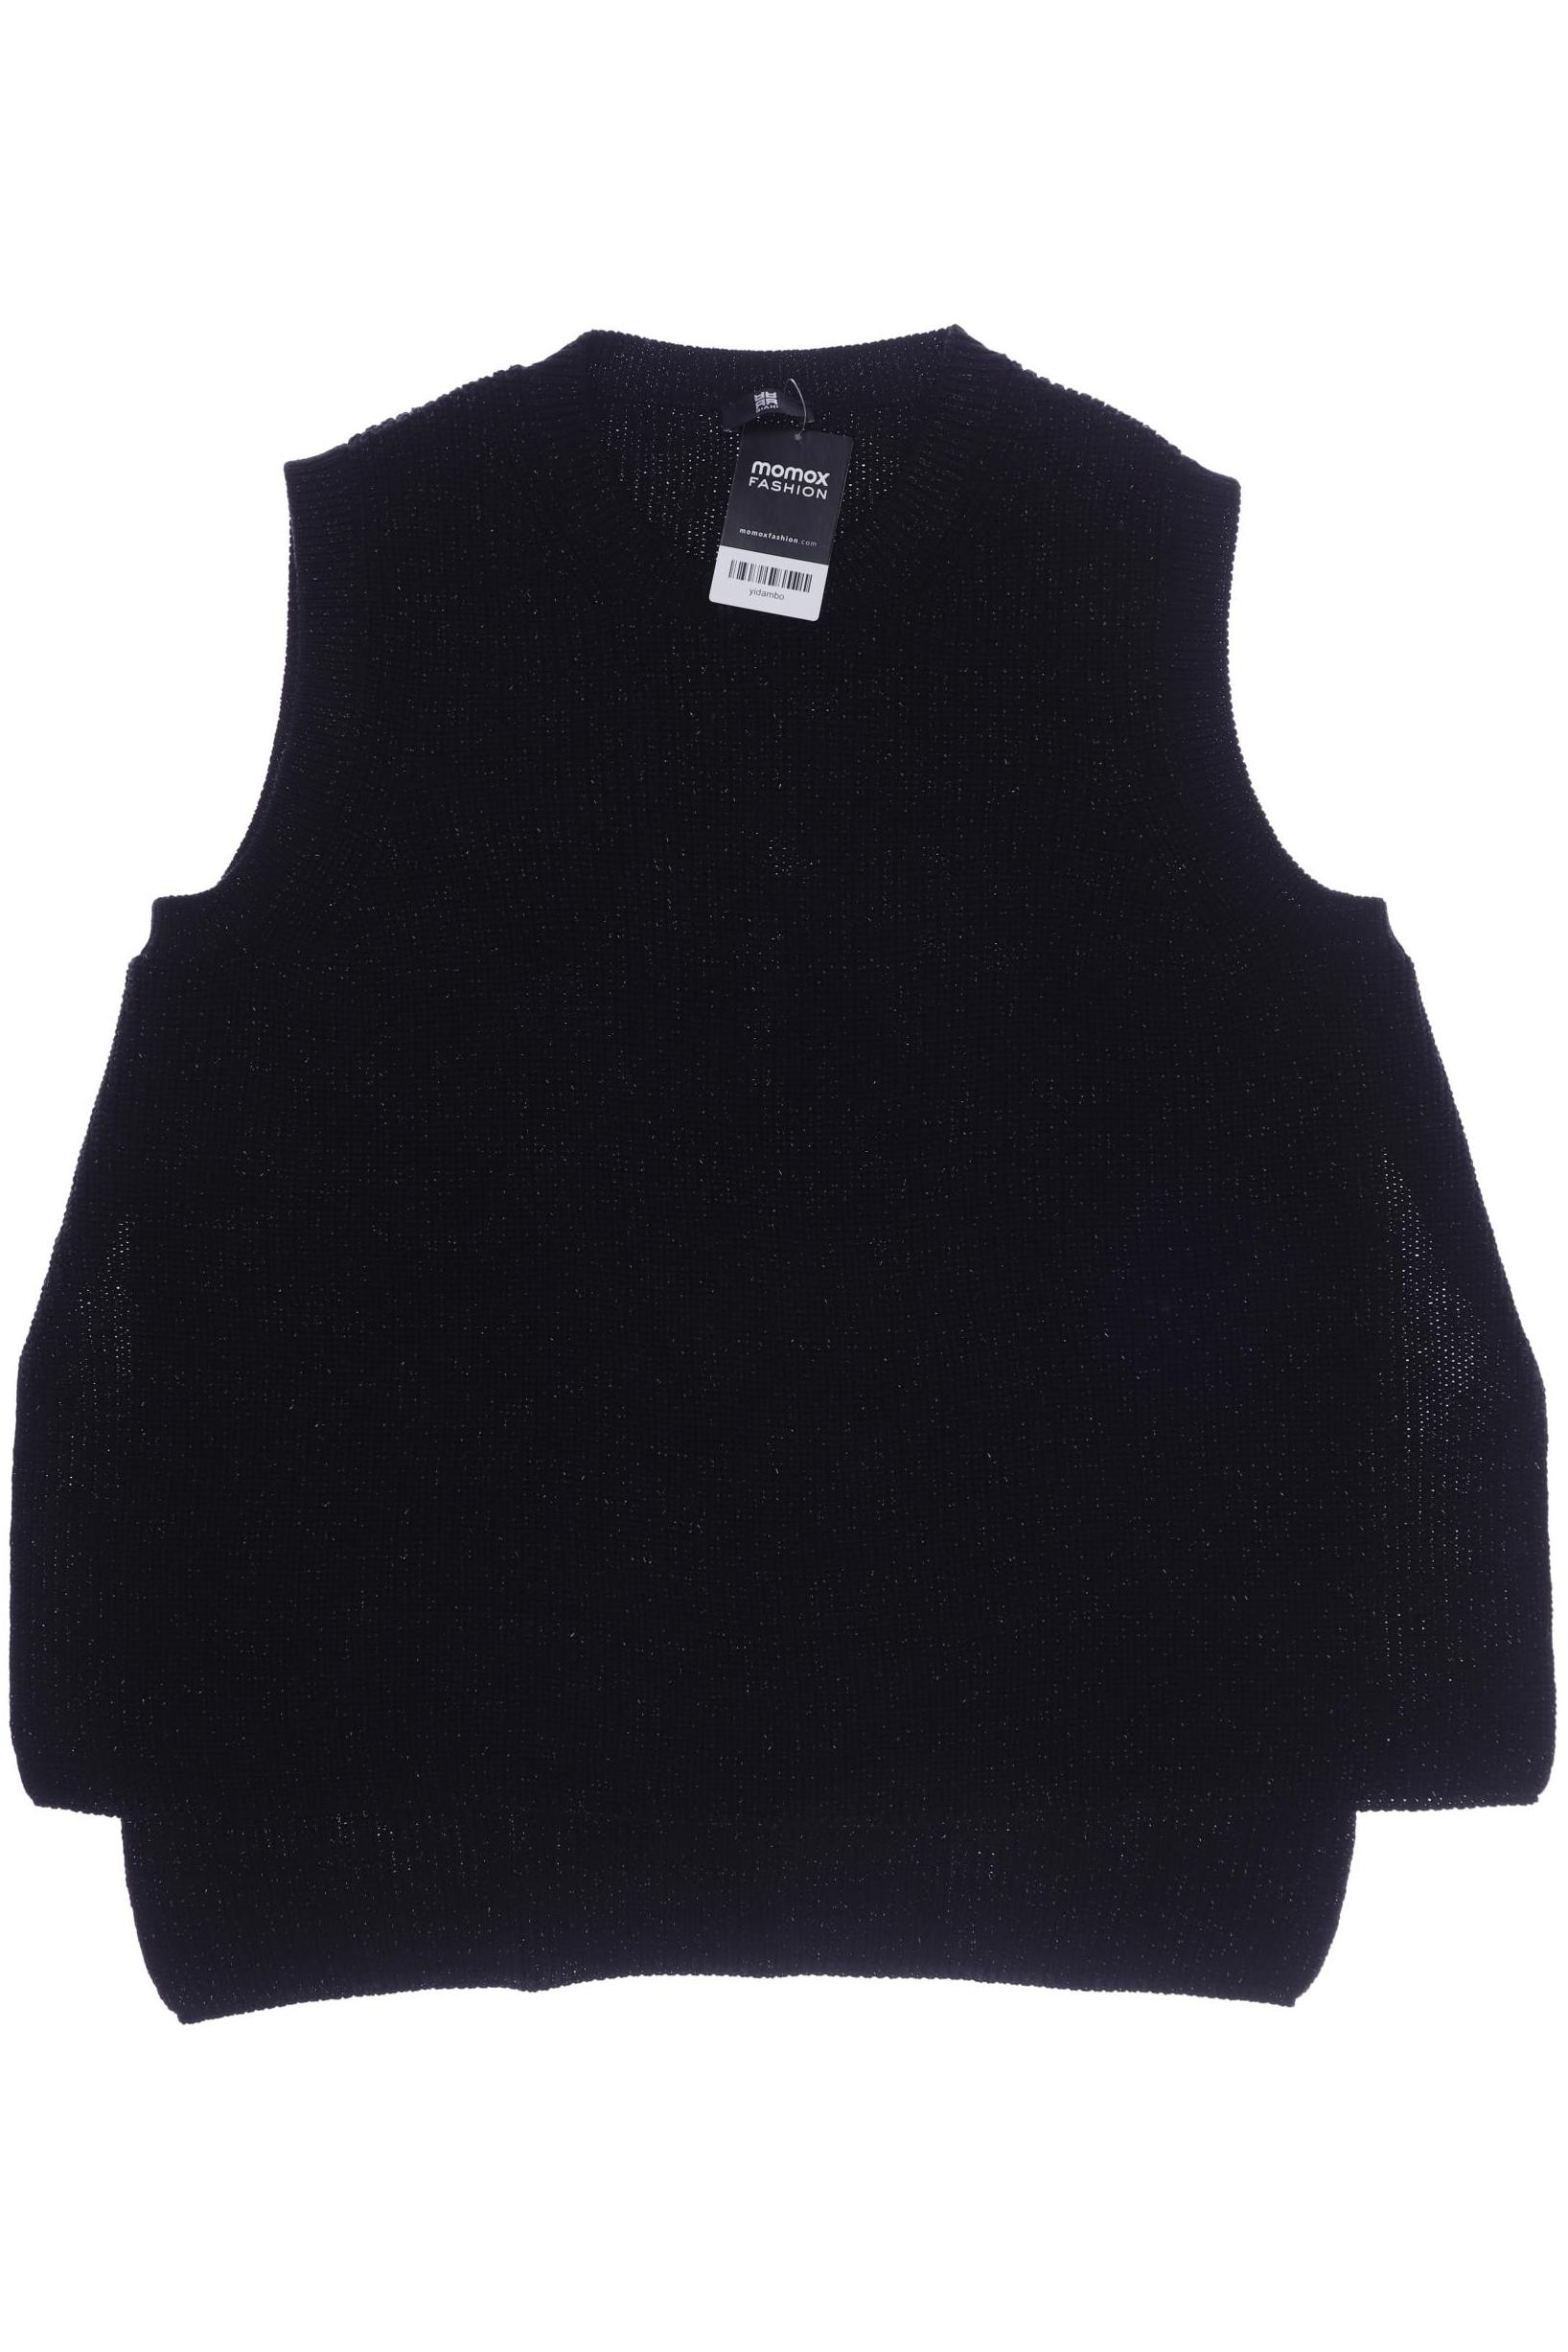 RIANI Damen Pullover, schwarz von RIANI